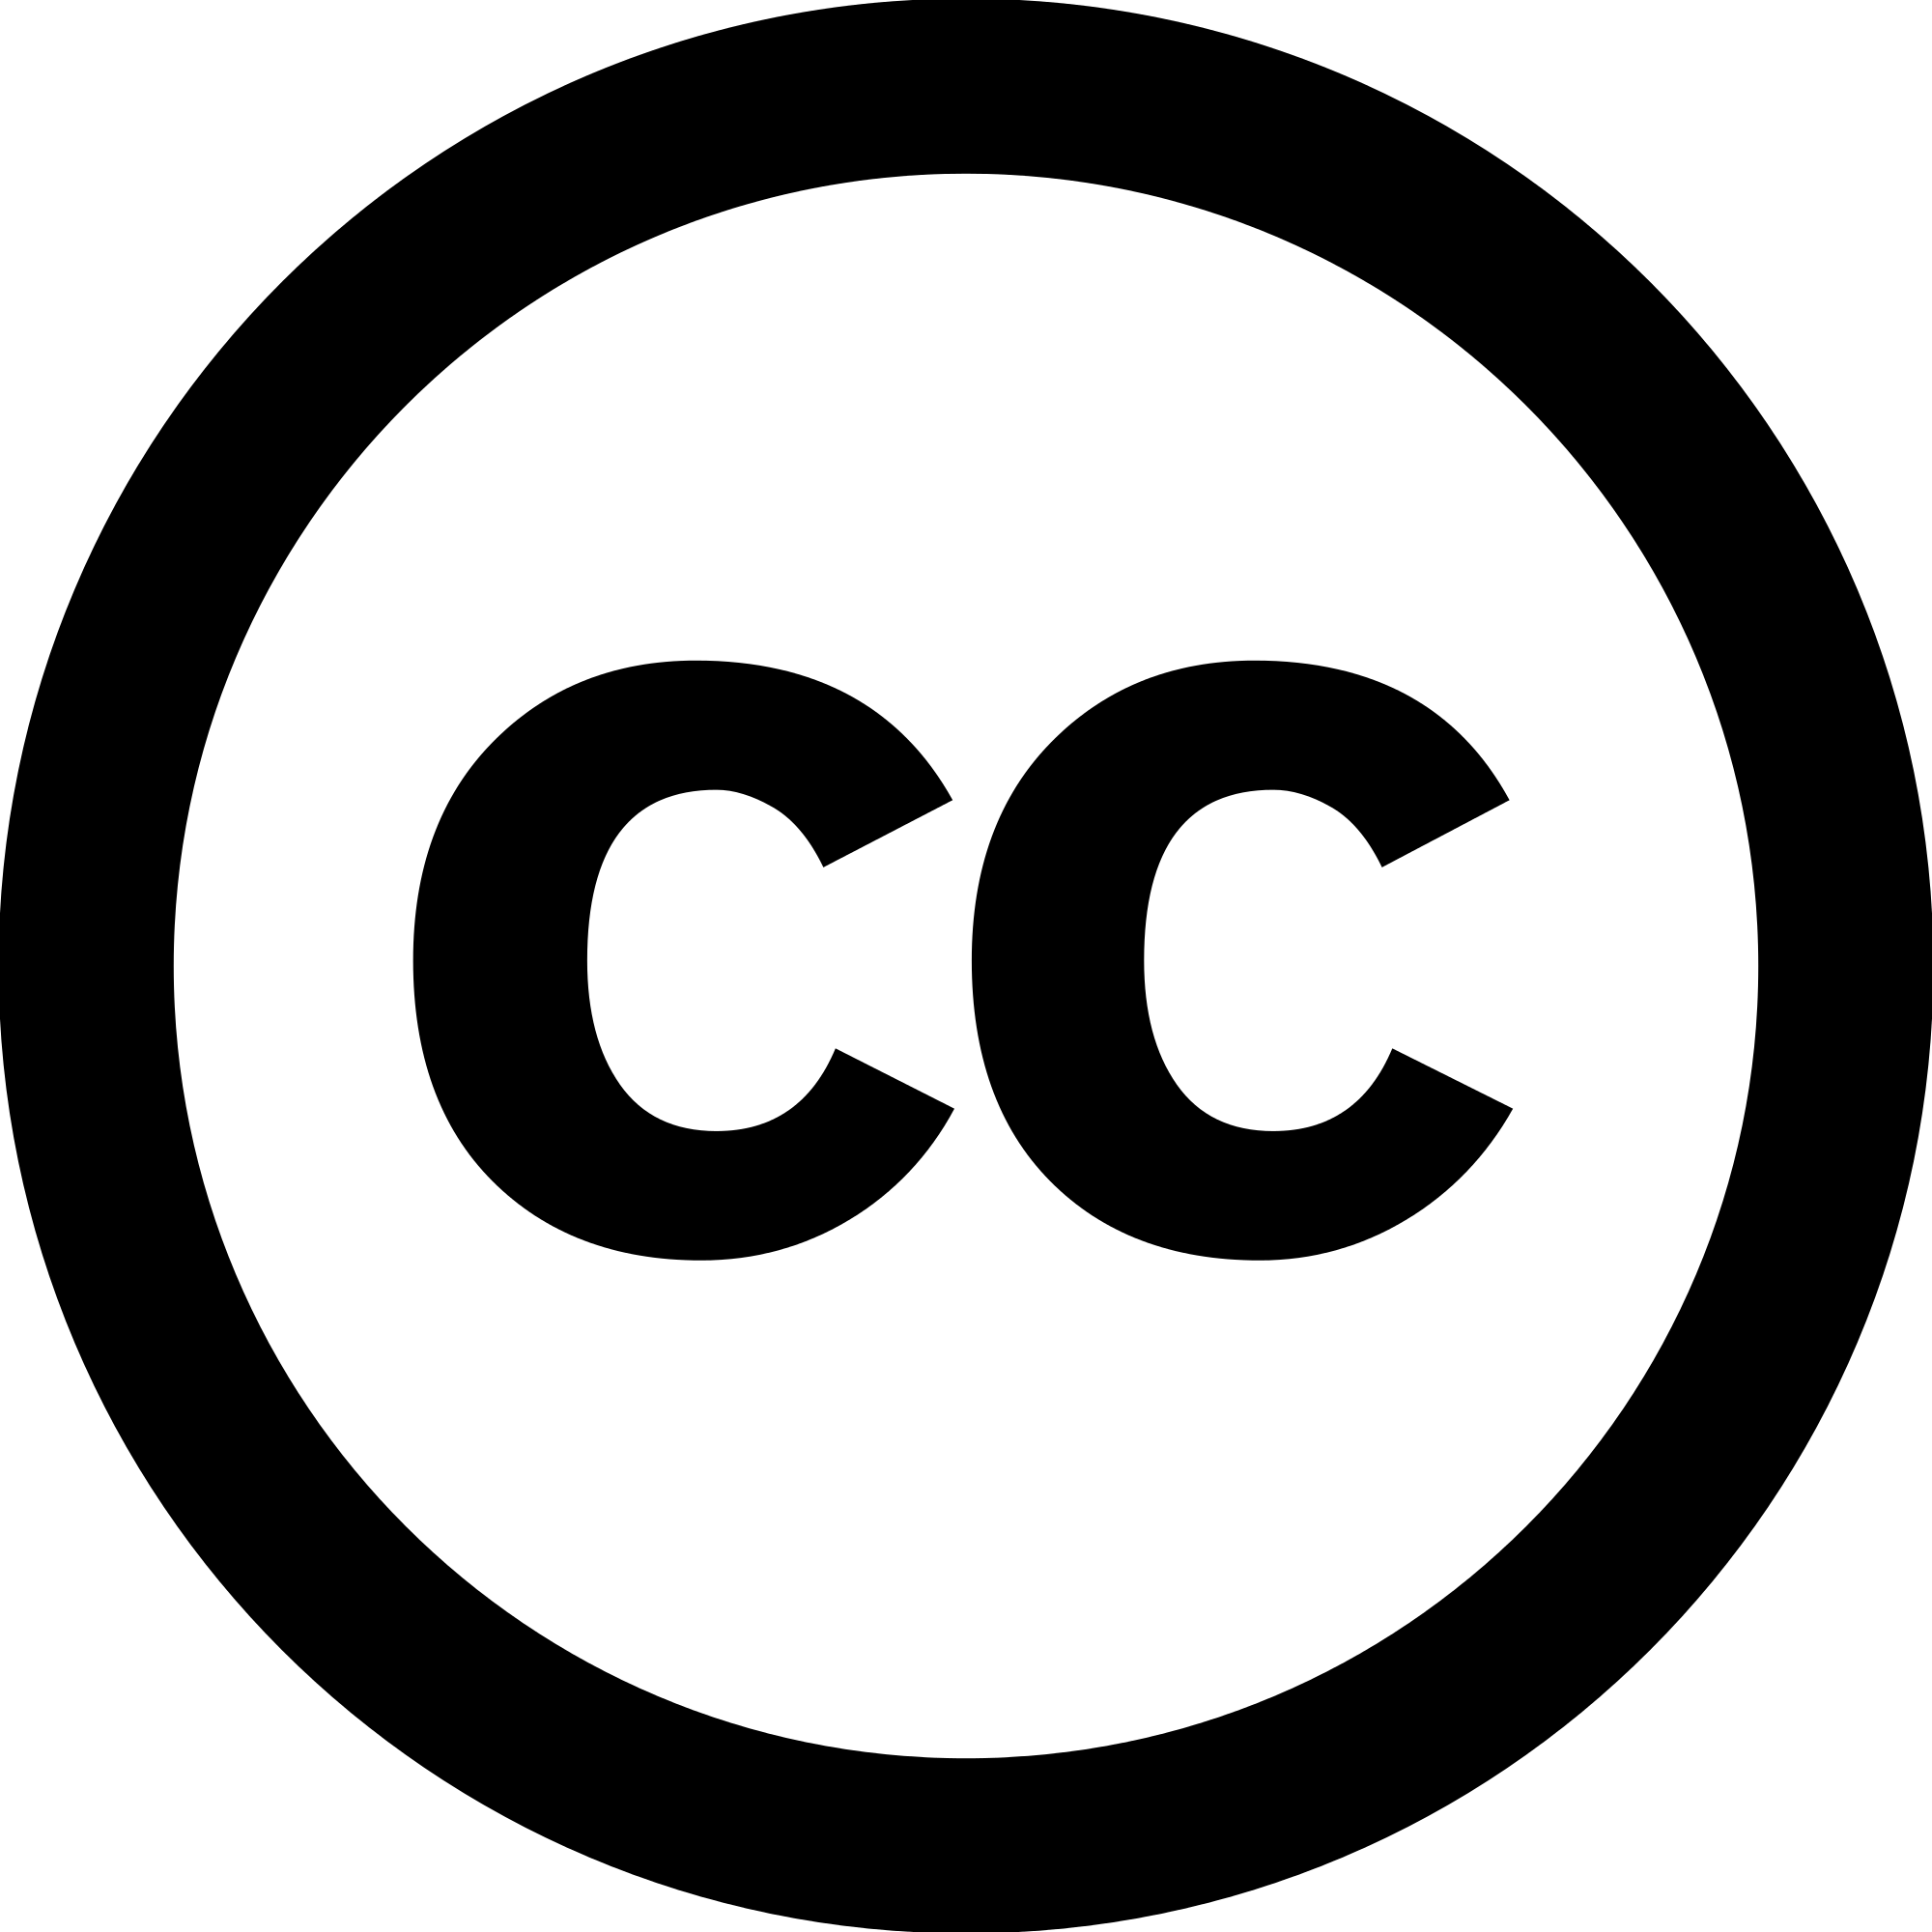 CC and White Logo - Cc White.svg